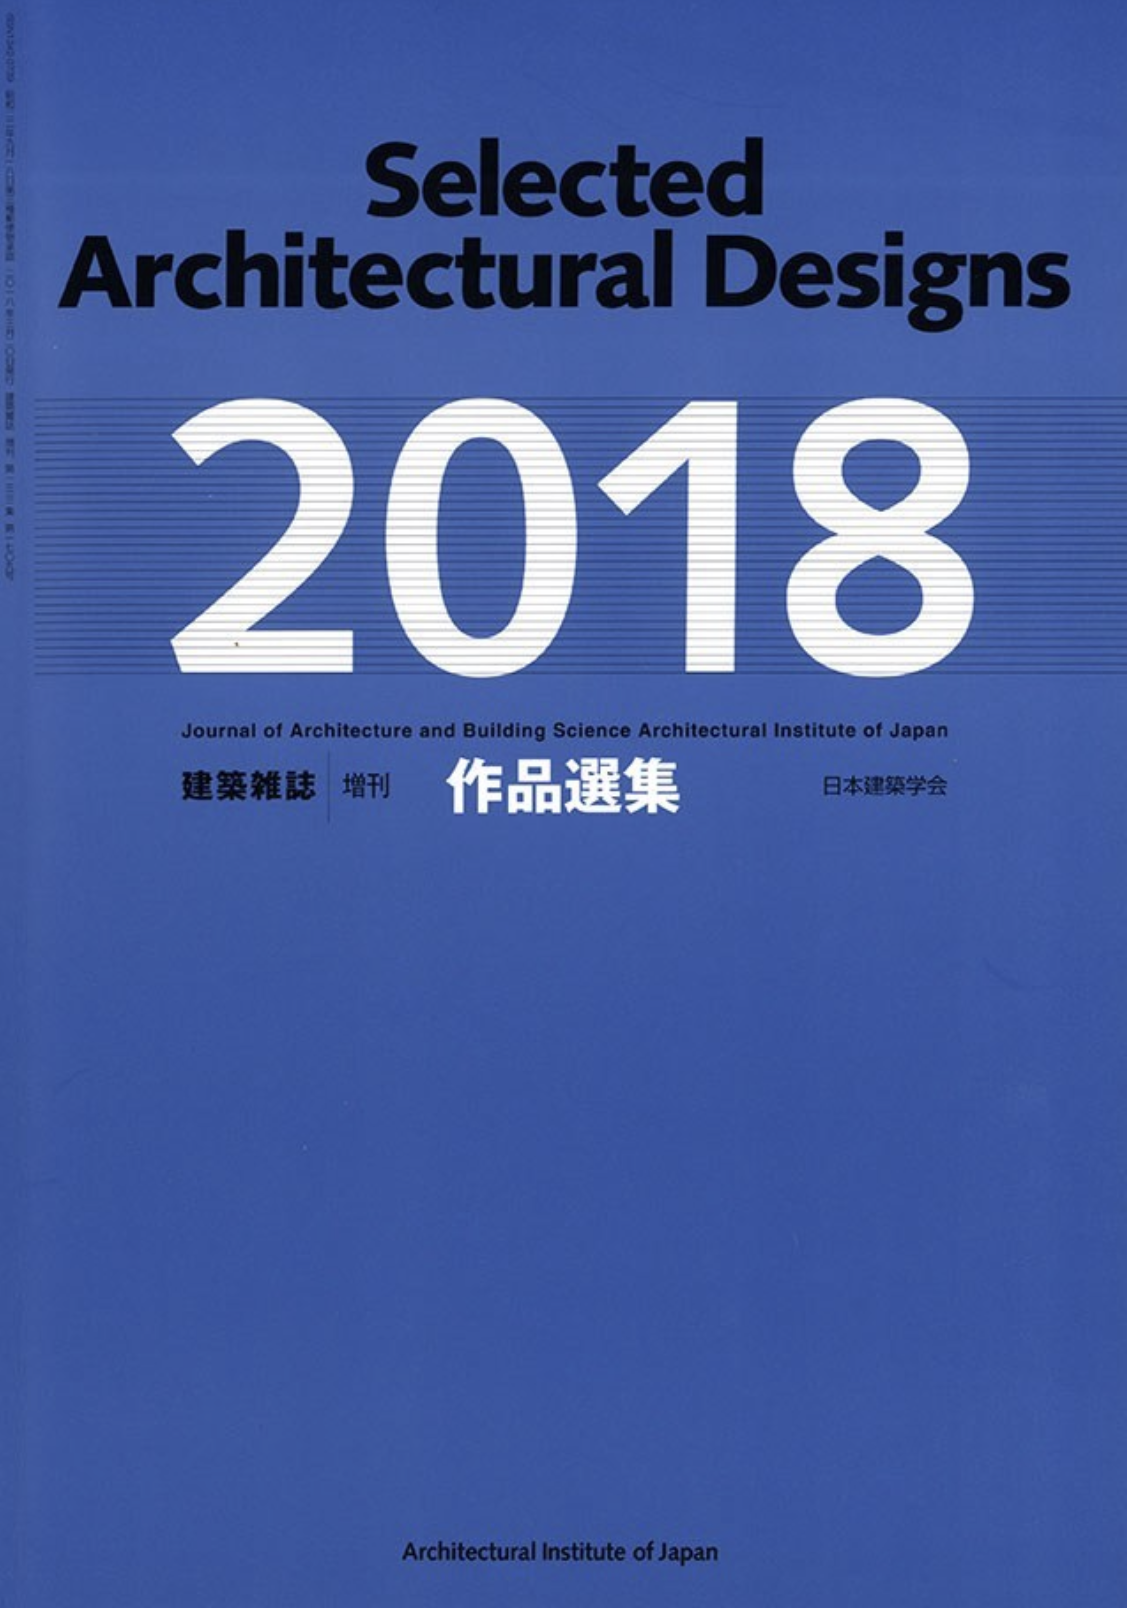 日本建築学会作品選集2018に“Agri Chapel”が掲載されました